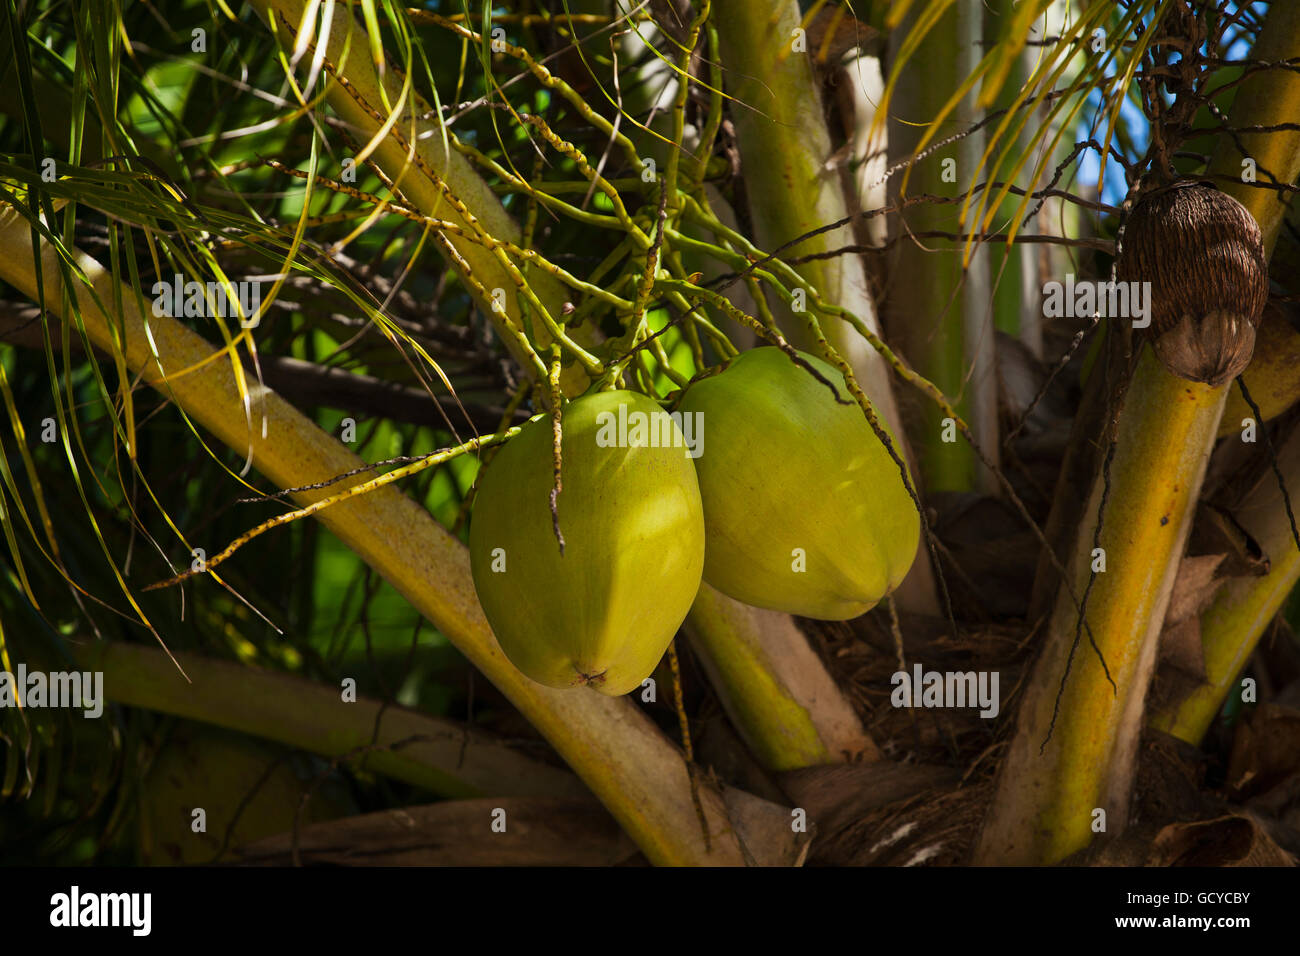 Coconuts on tree; Playa del Carmen, Quintana Roo, Mexico Stock Photo